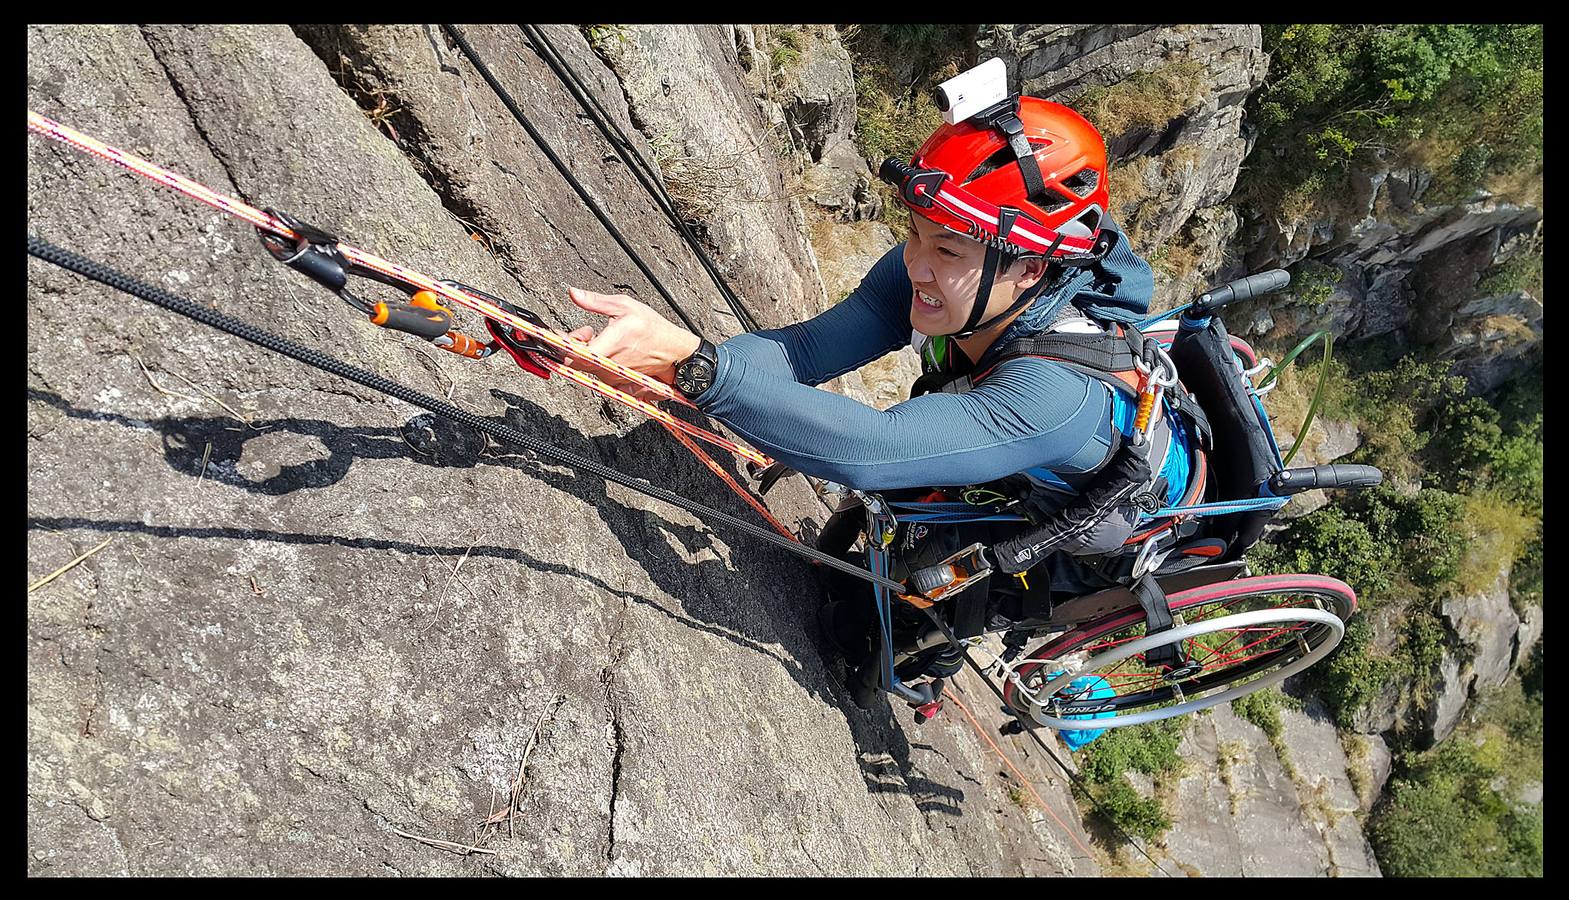 El 9 de diciembre de 2011 tuvo un accidente de moto que le dejó parapléjico y terminó con su carrera como escalador profesional, pero nunca se rindió.